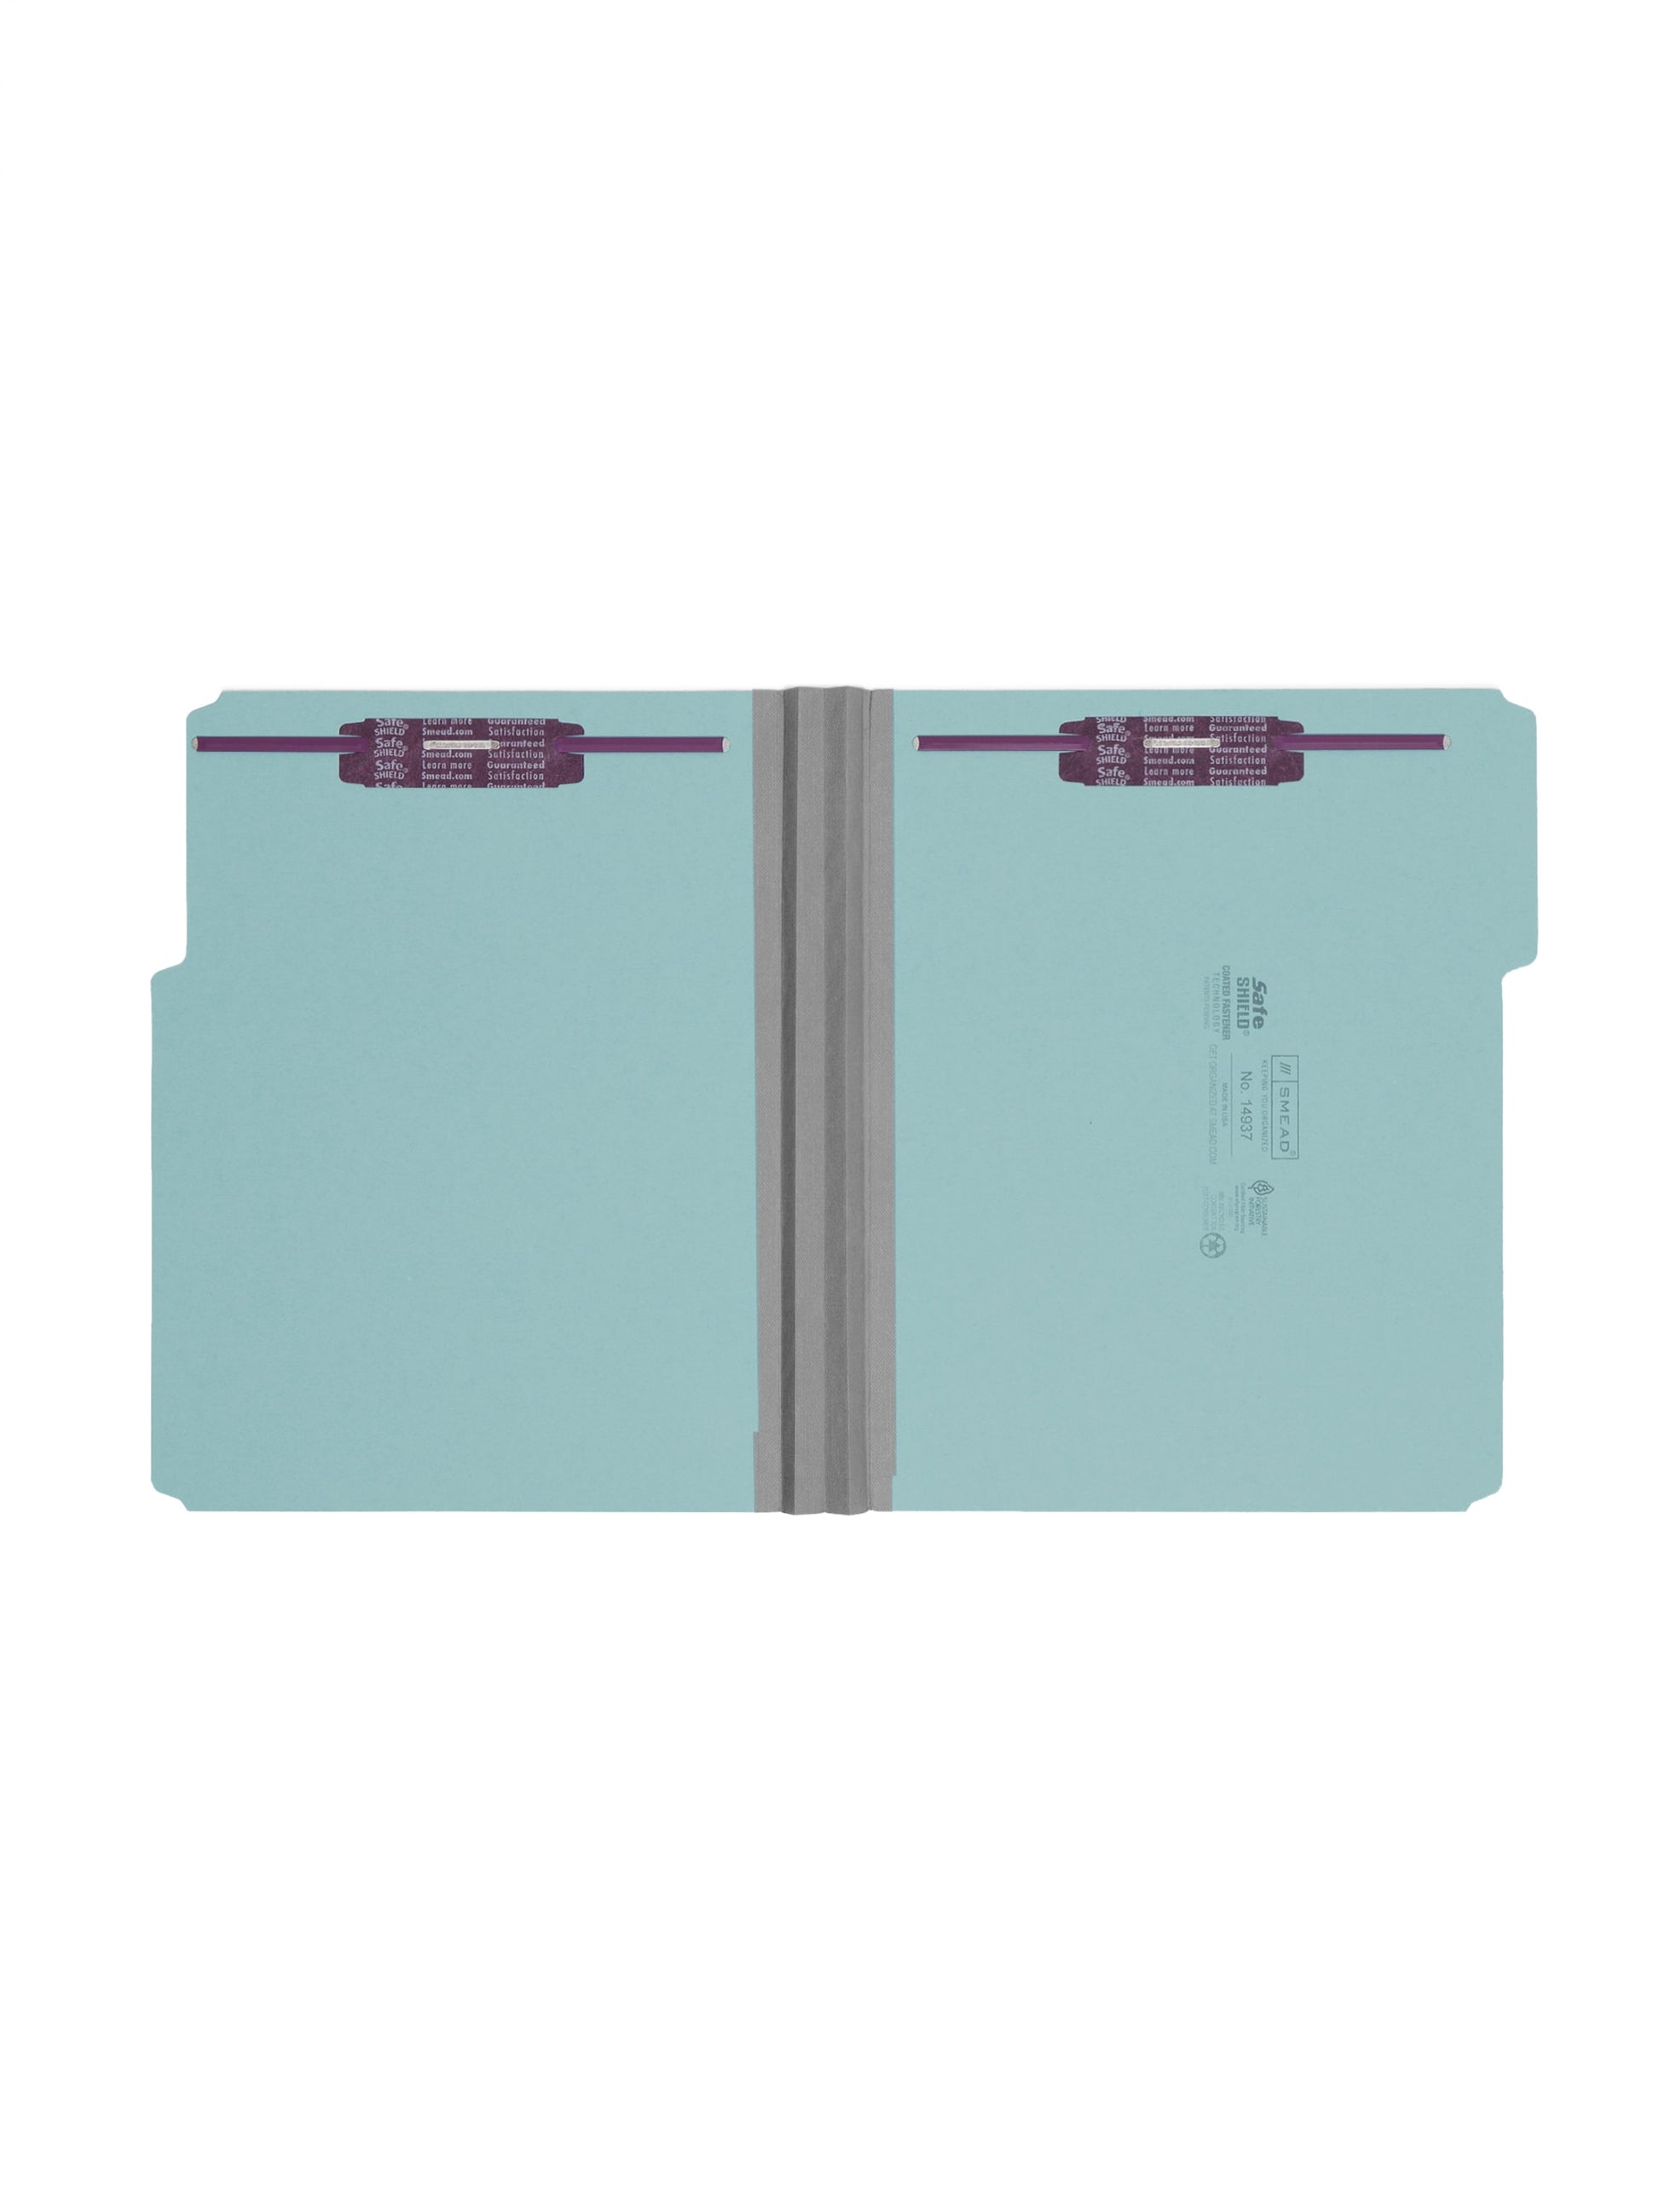 SafeSHIELD® Pressboard Fastener File Folders, 2 inch Expansion, 1/3-Cut Tab, Blue Color, Letter Size, Set of 25, 086486149372